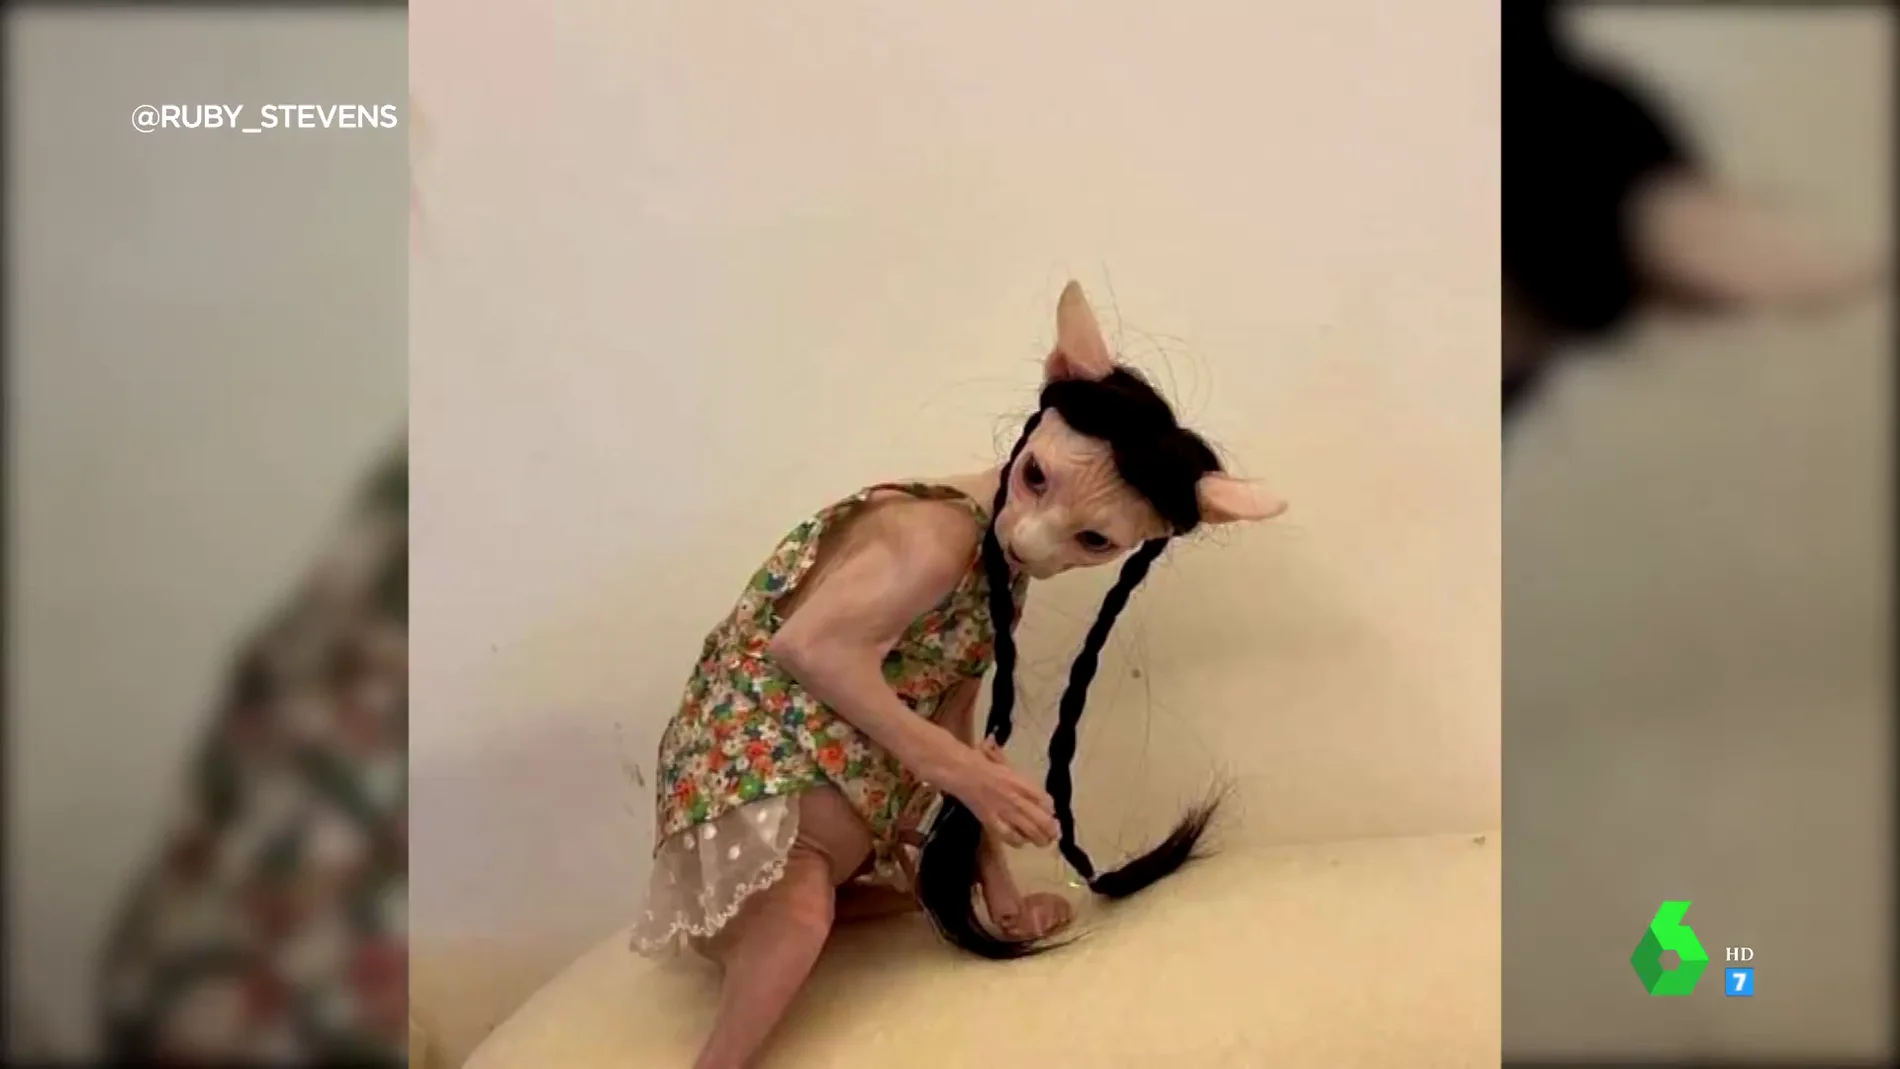 Se convierte en Trastornado Espíritu La "inquietante" imagen de un gato esfinge con peluca y vestido que se ha  hecho viral: "Parece Gollum"